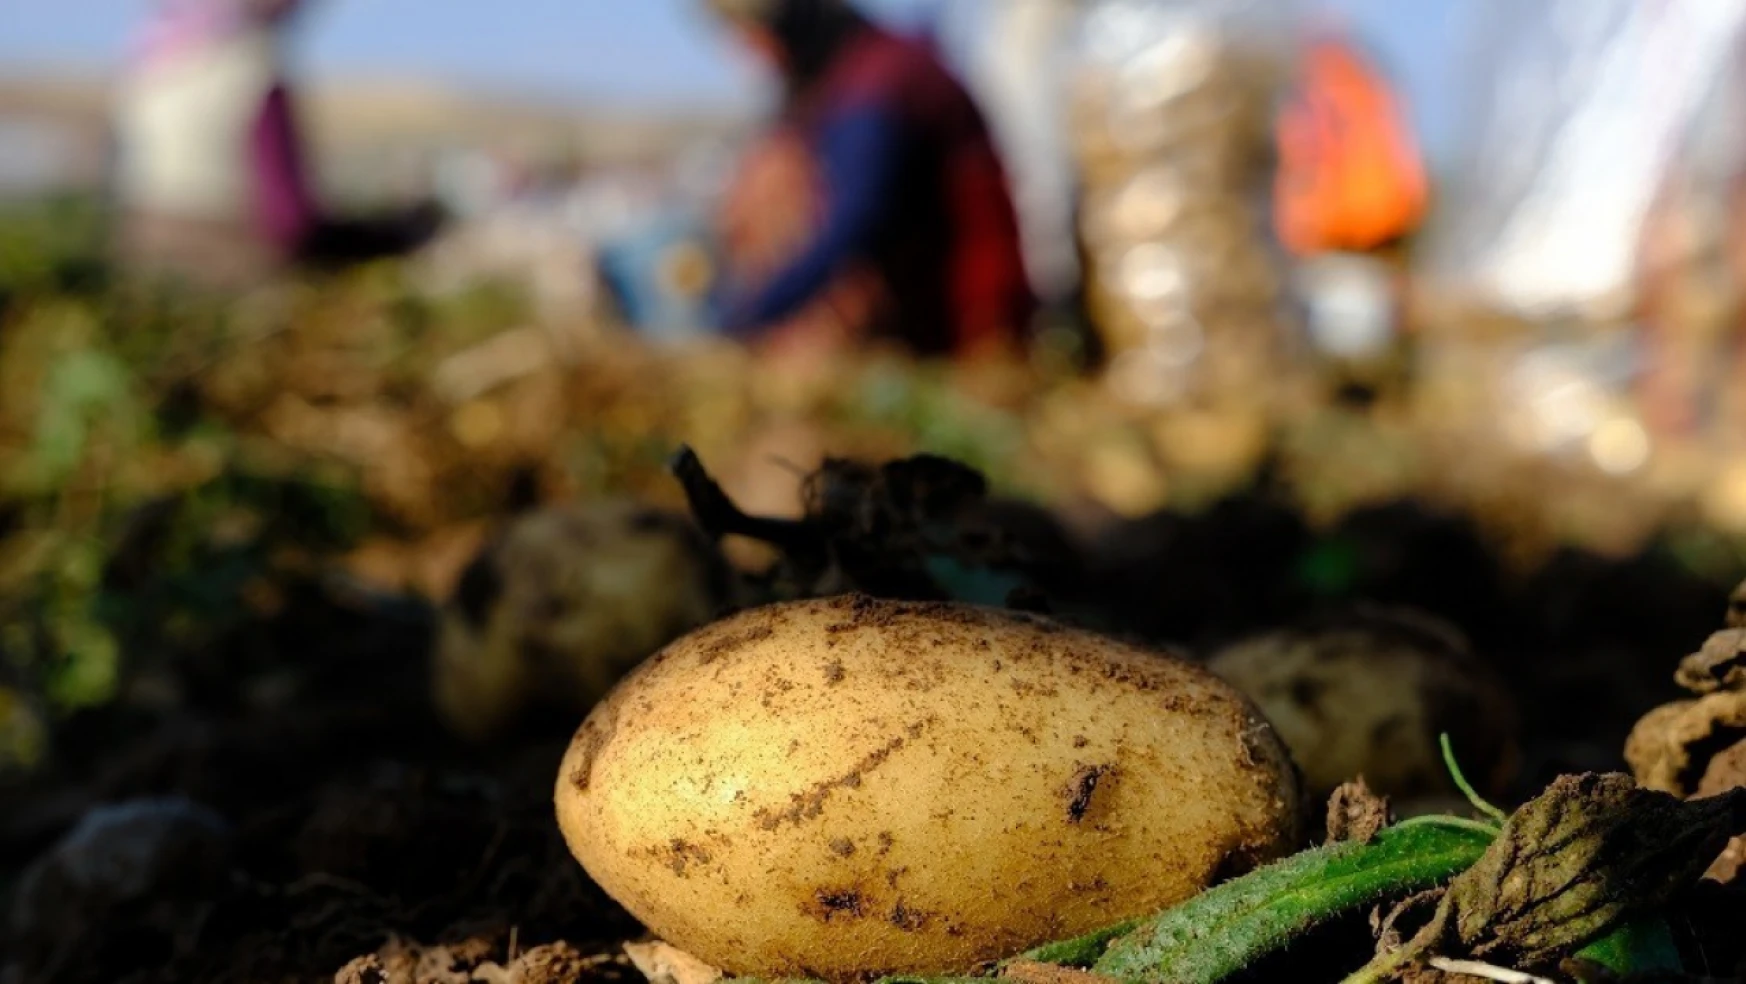 İstanbul'da Mayıs ayının en fazla pahalanan ürünü patates oldu